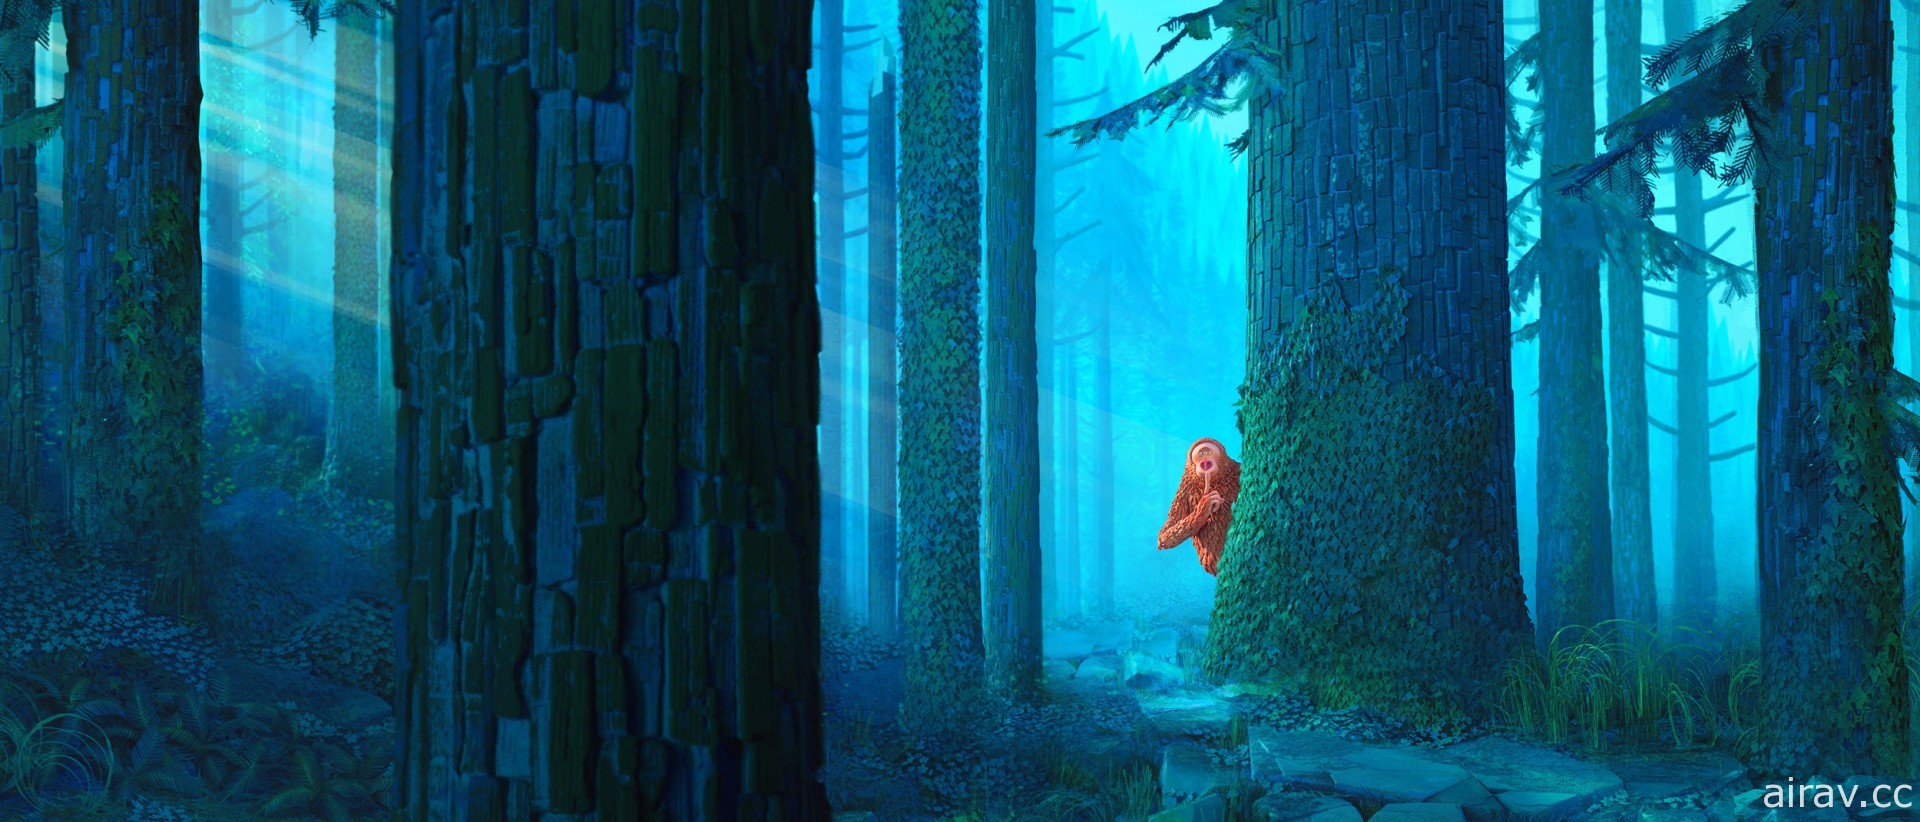 莱卡动画工作室曝光第五部逐格动画《怪物谷》故事细节和剧照 明年春季北美上映